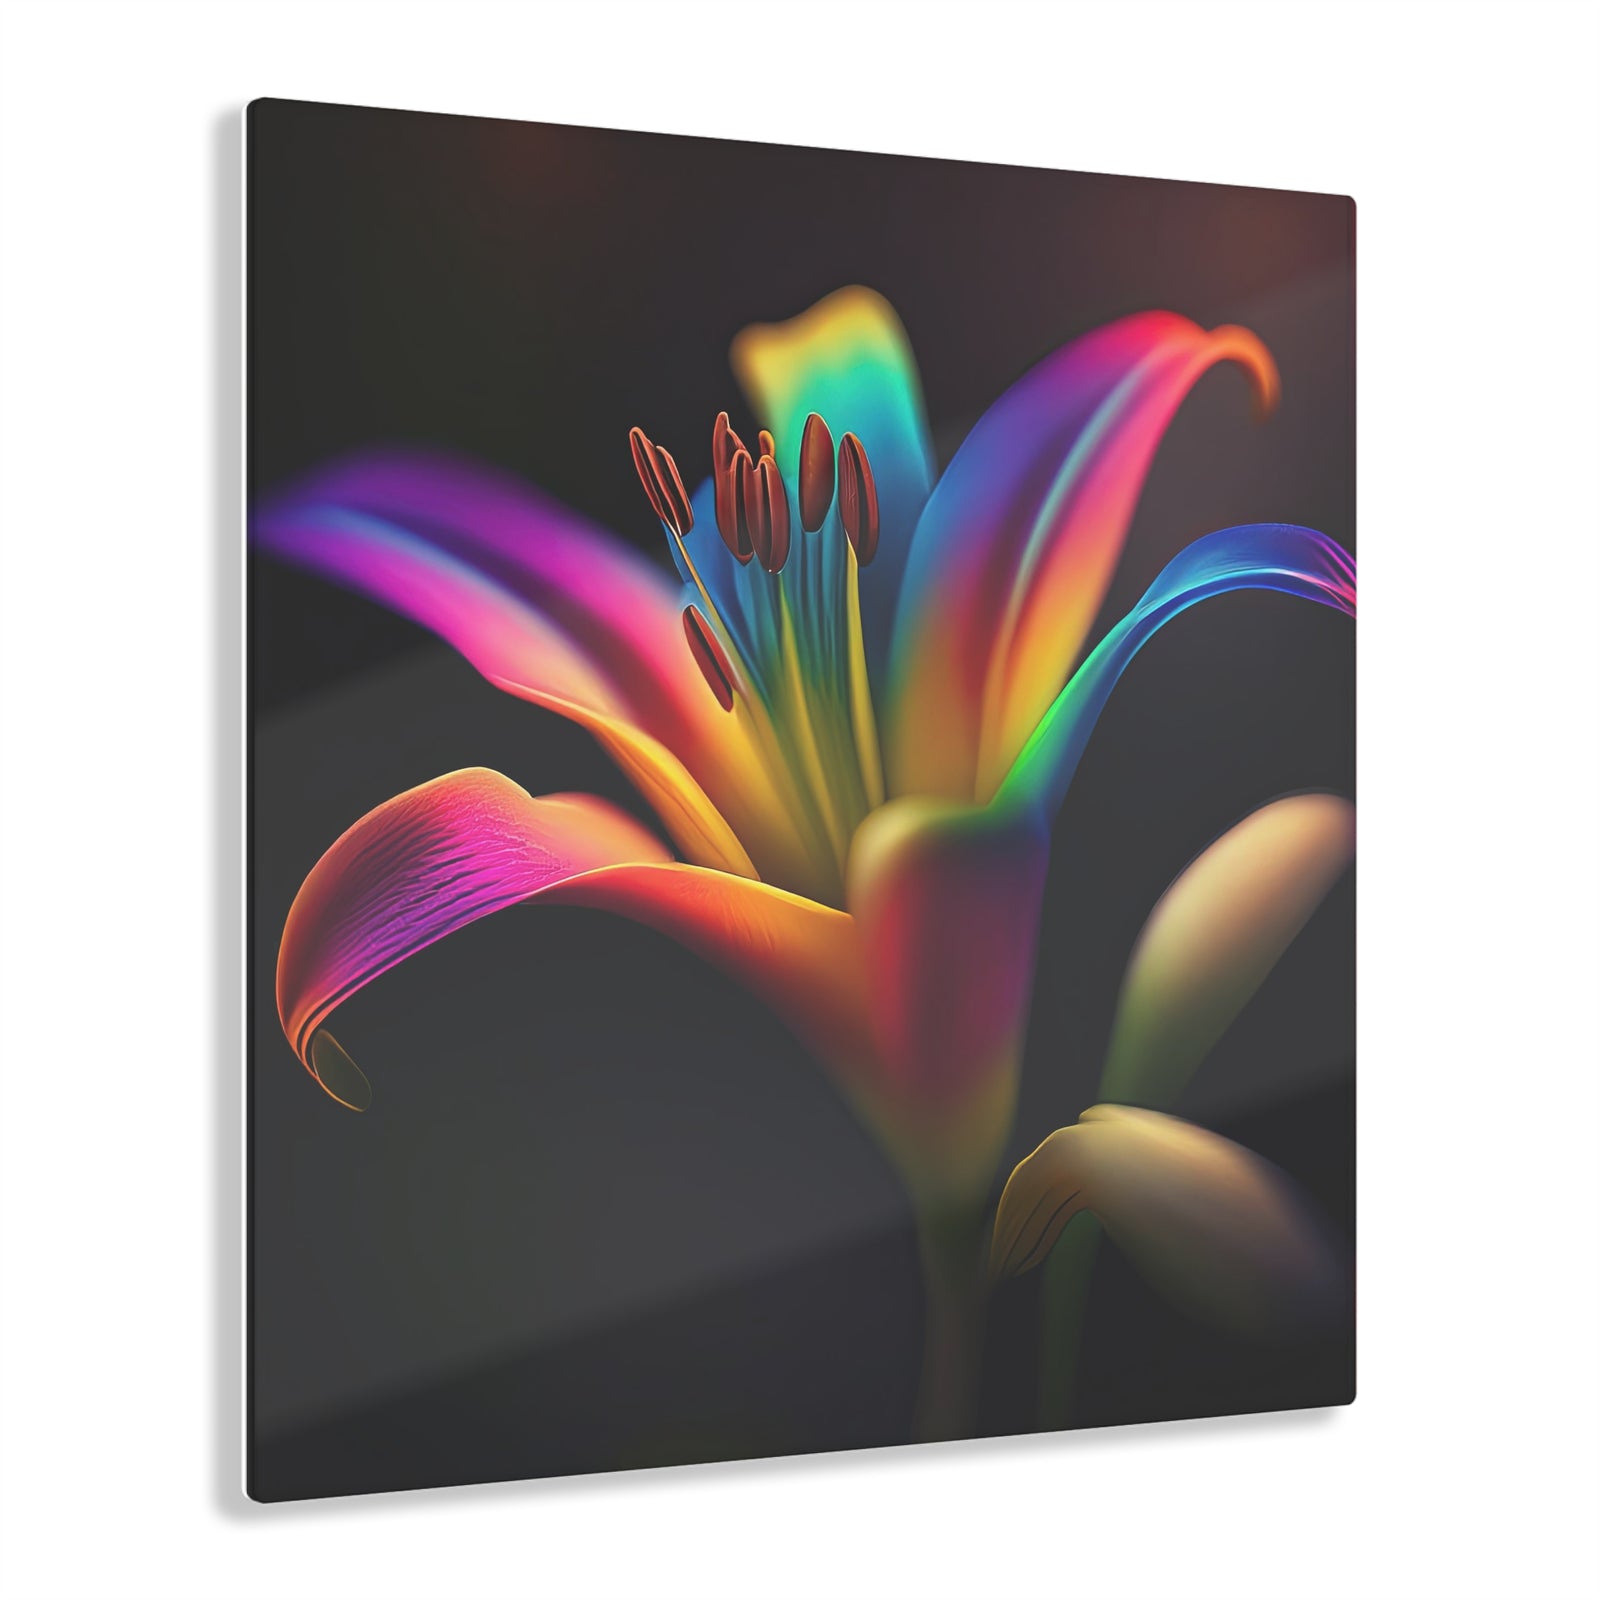 Impression sur Acrylique: Rainbow Lily Delight